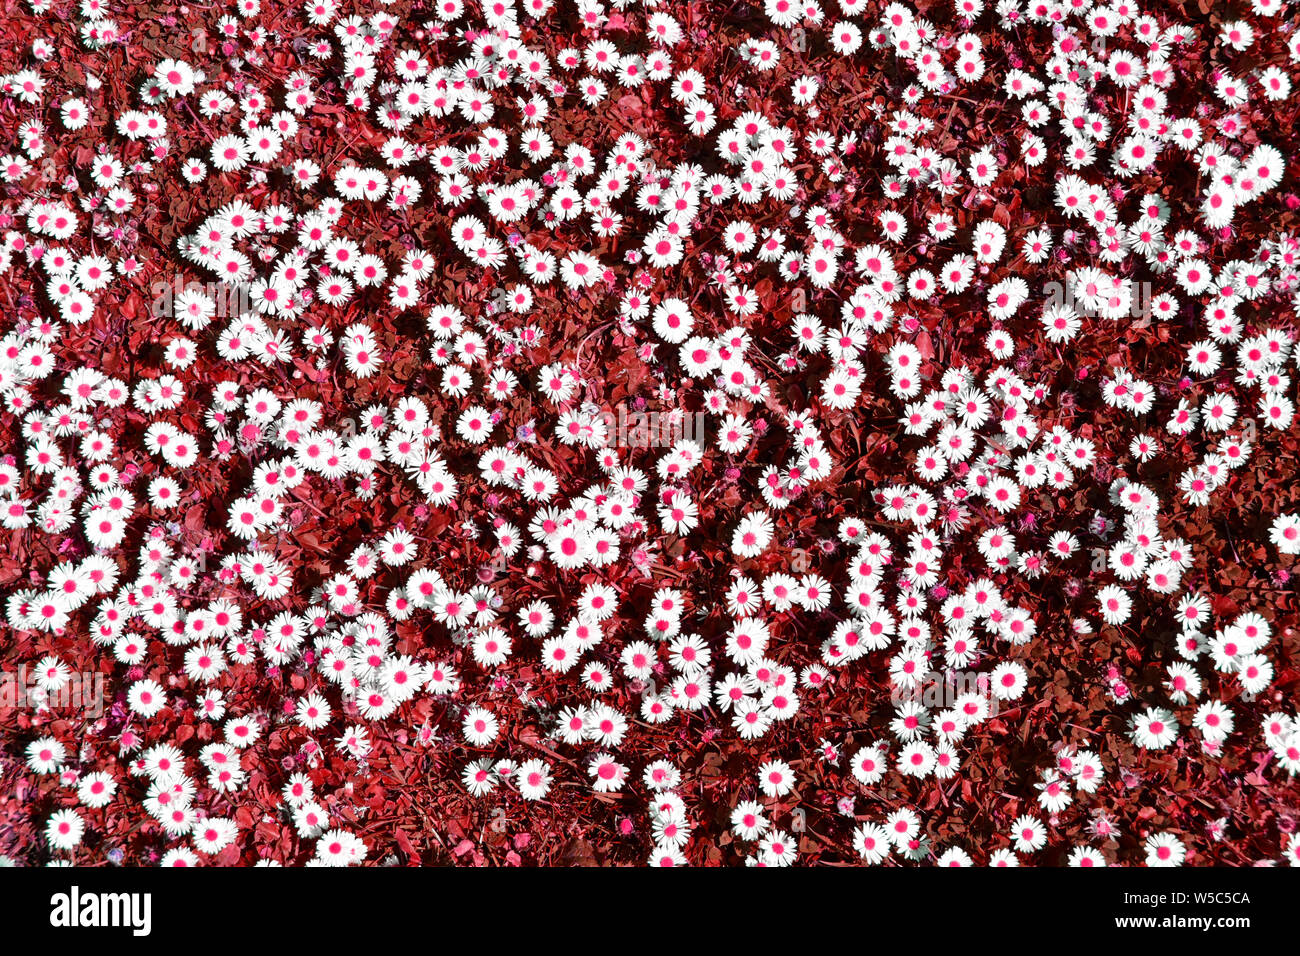 Abstract background Image durch künstliche Farbe Manipulation eines Patches von Daises in eine Wiese mit weissen daisy flowers Köpfe rote Punkte & Gras UK erstellt Stockfoto